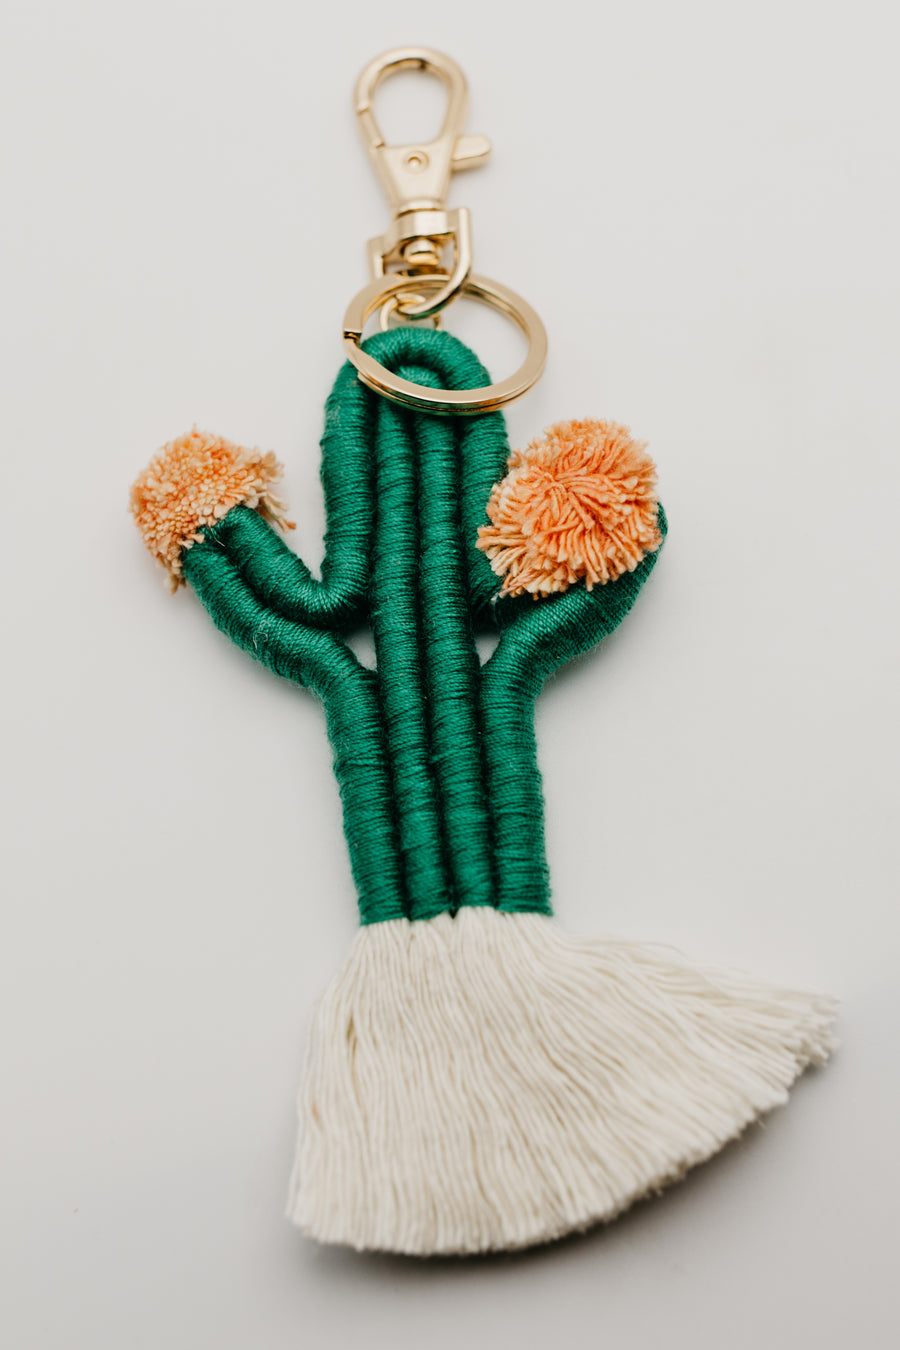 The Zandra Cactus Keychain